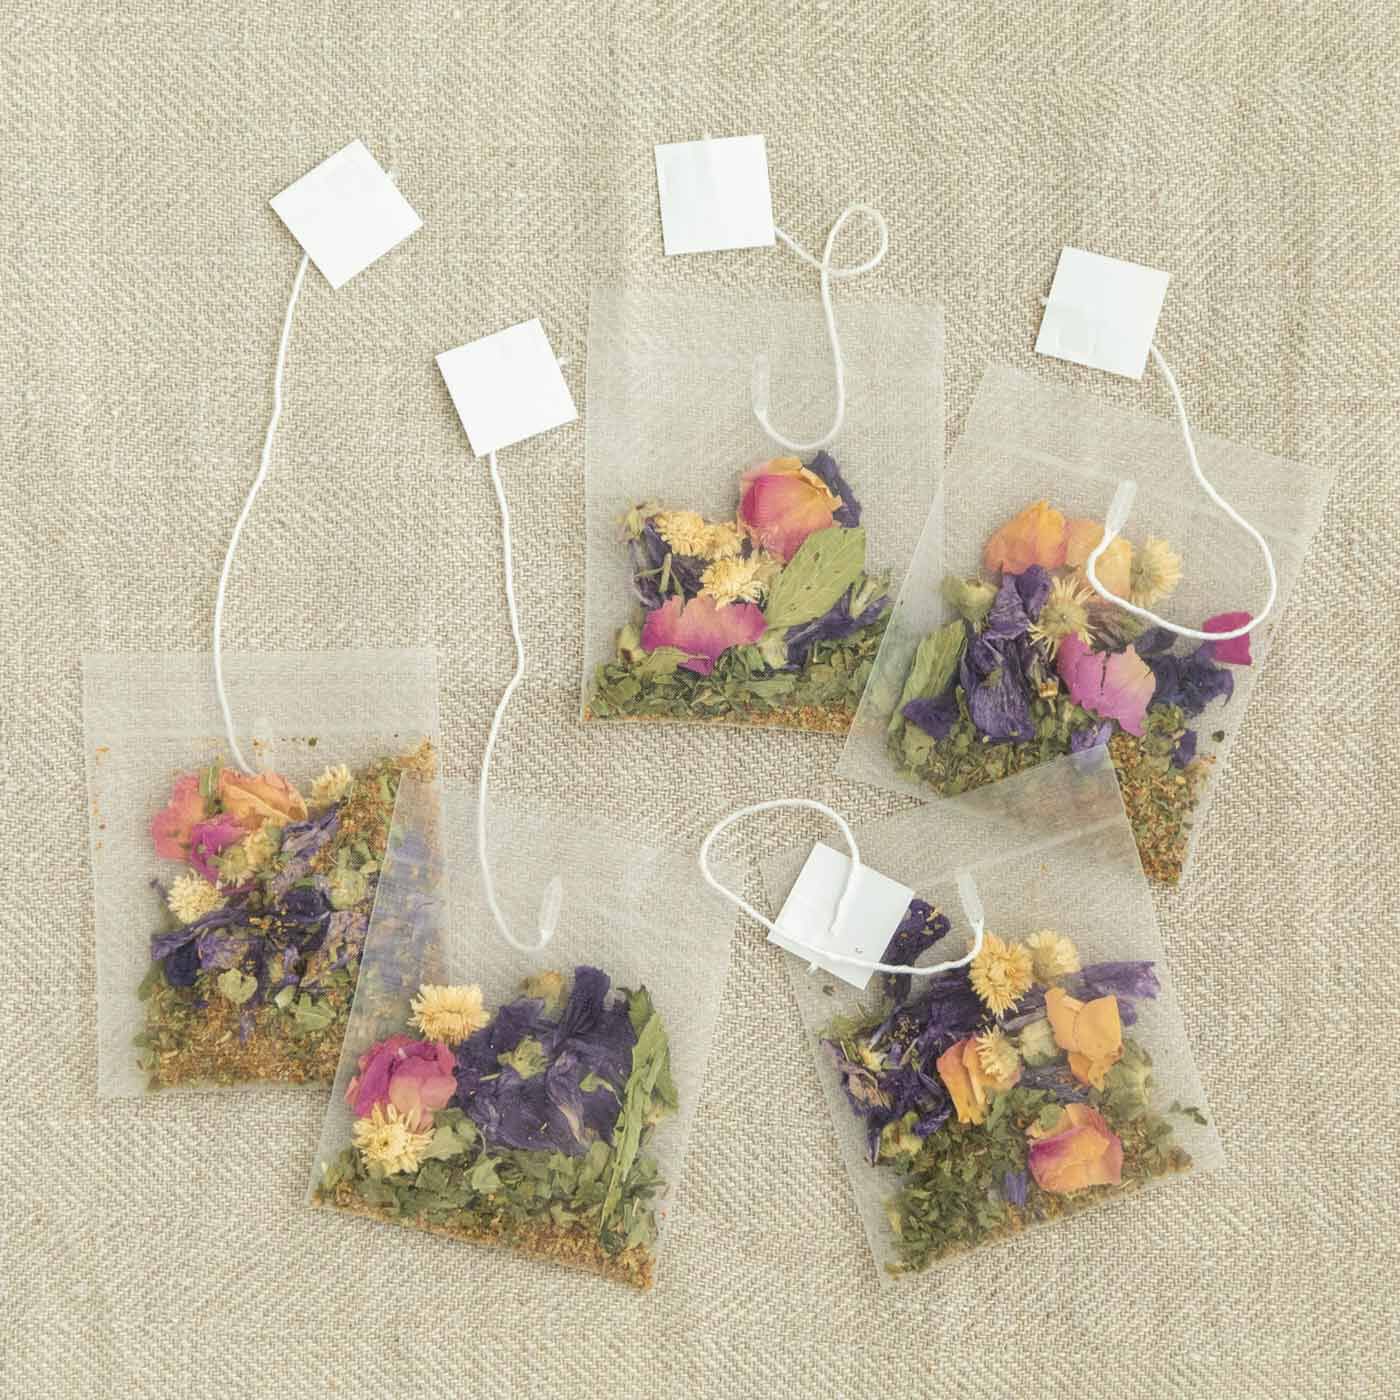 フェリシモの雑貨 Kraso|心がざらざらする日のためのハーブティー nono〈きもちも咲くお花〉の会|ティーバッグ5袋セットです。